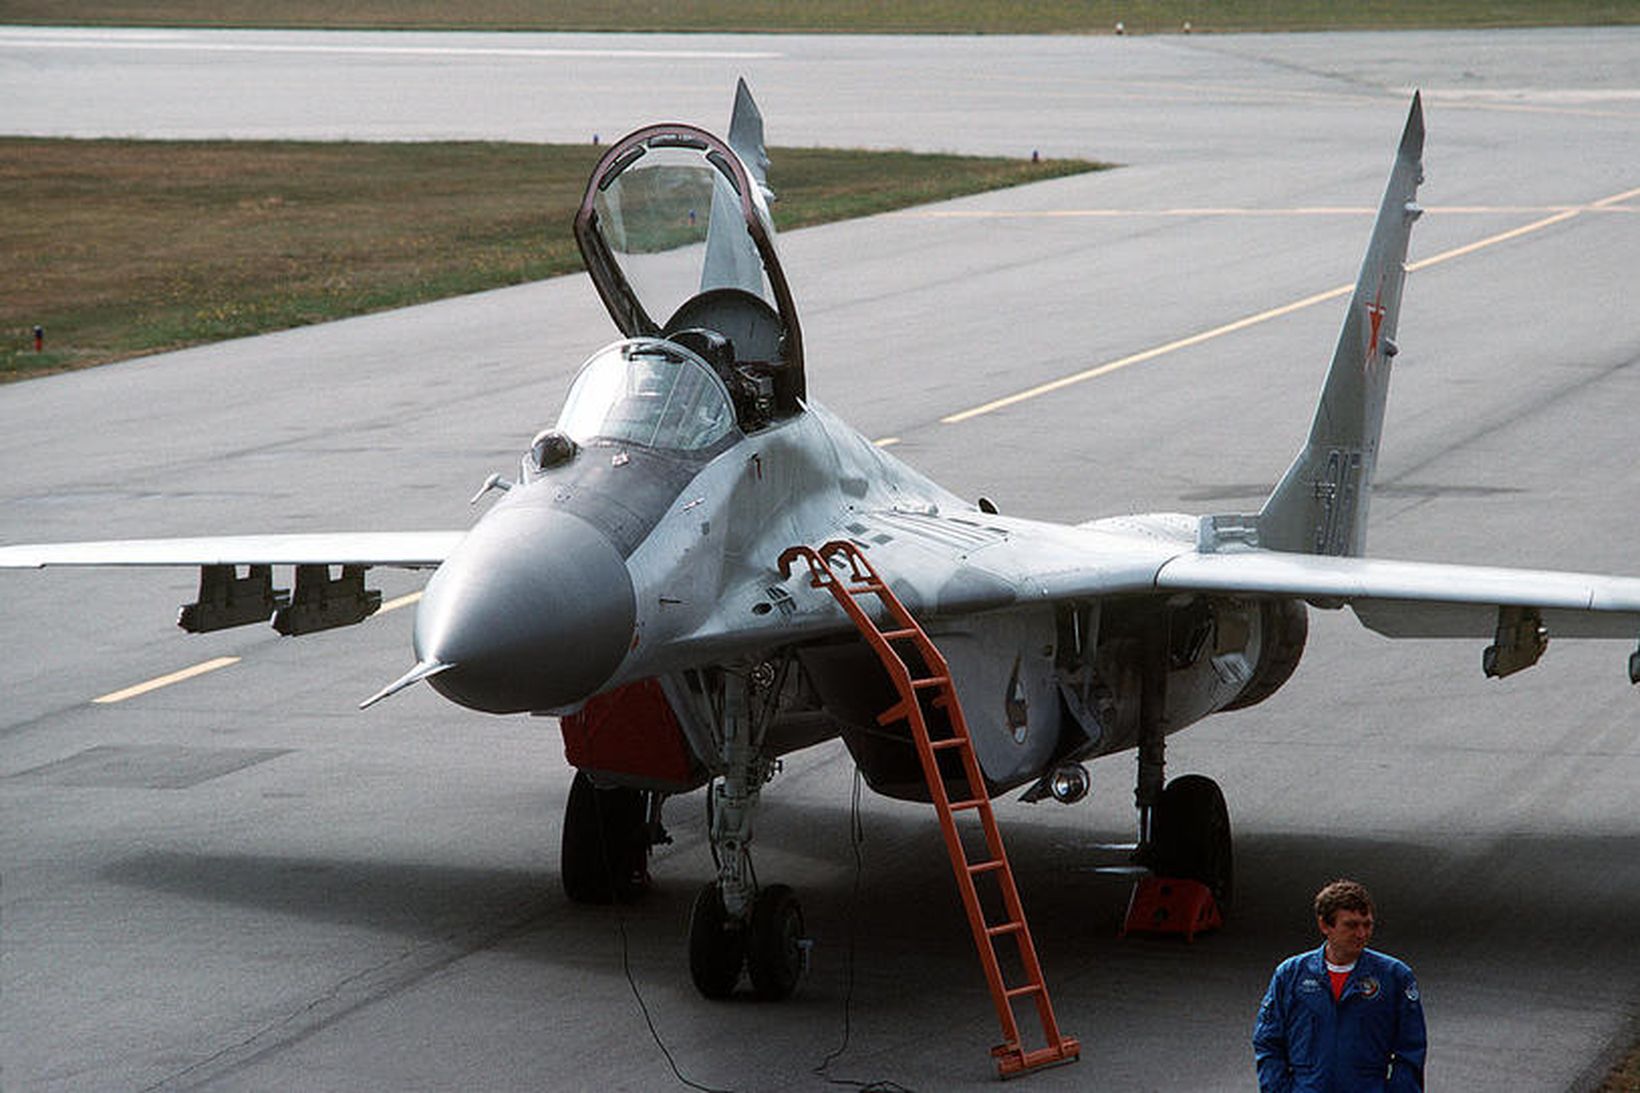 Orrustuþota af gerðinni MiG-29.